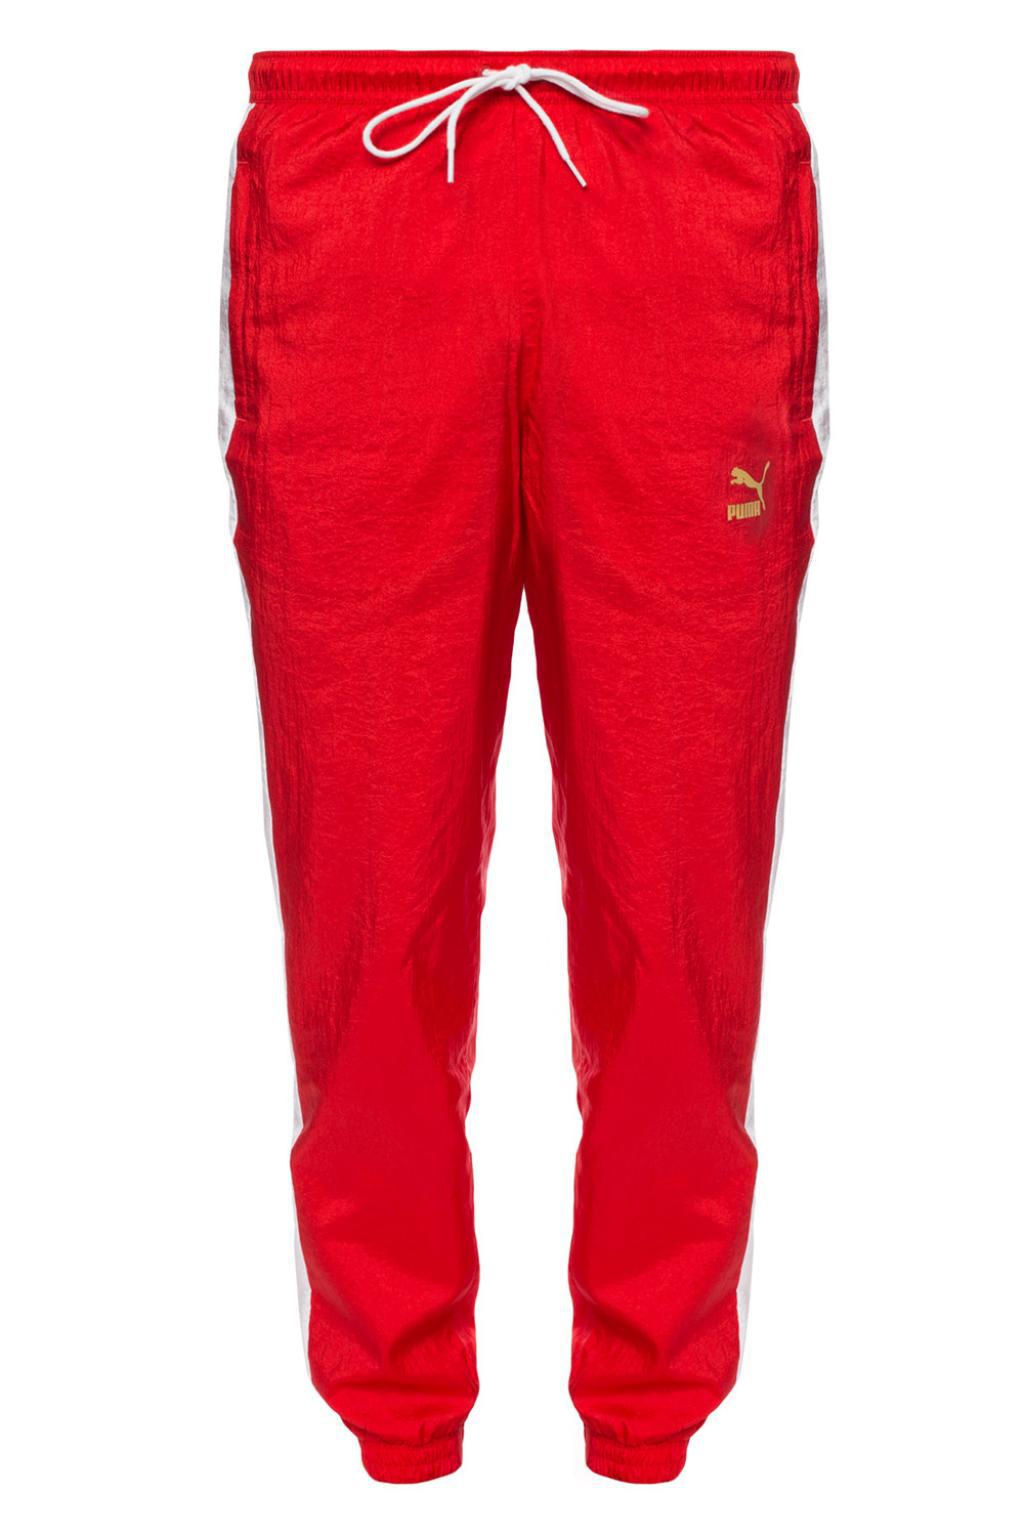 puma sweatpants red > Clearance shop